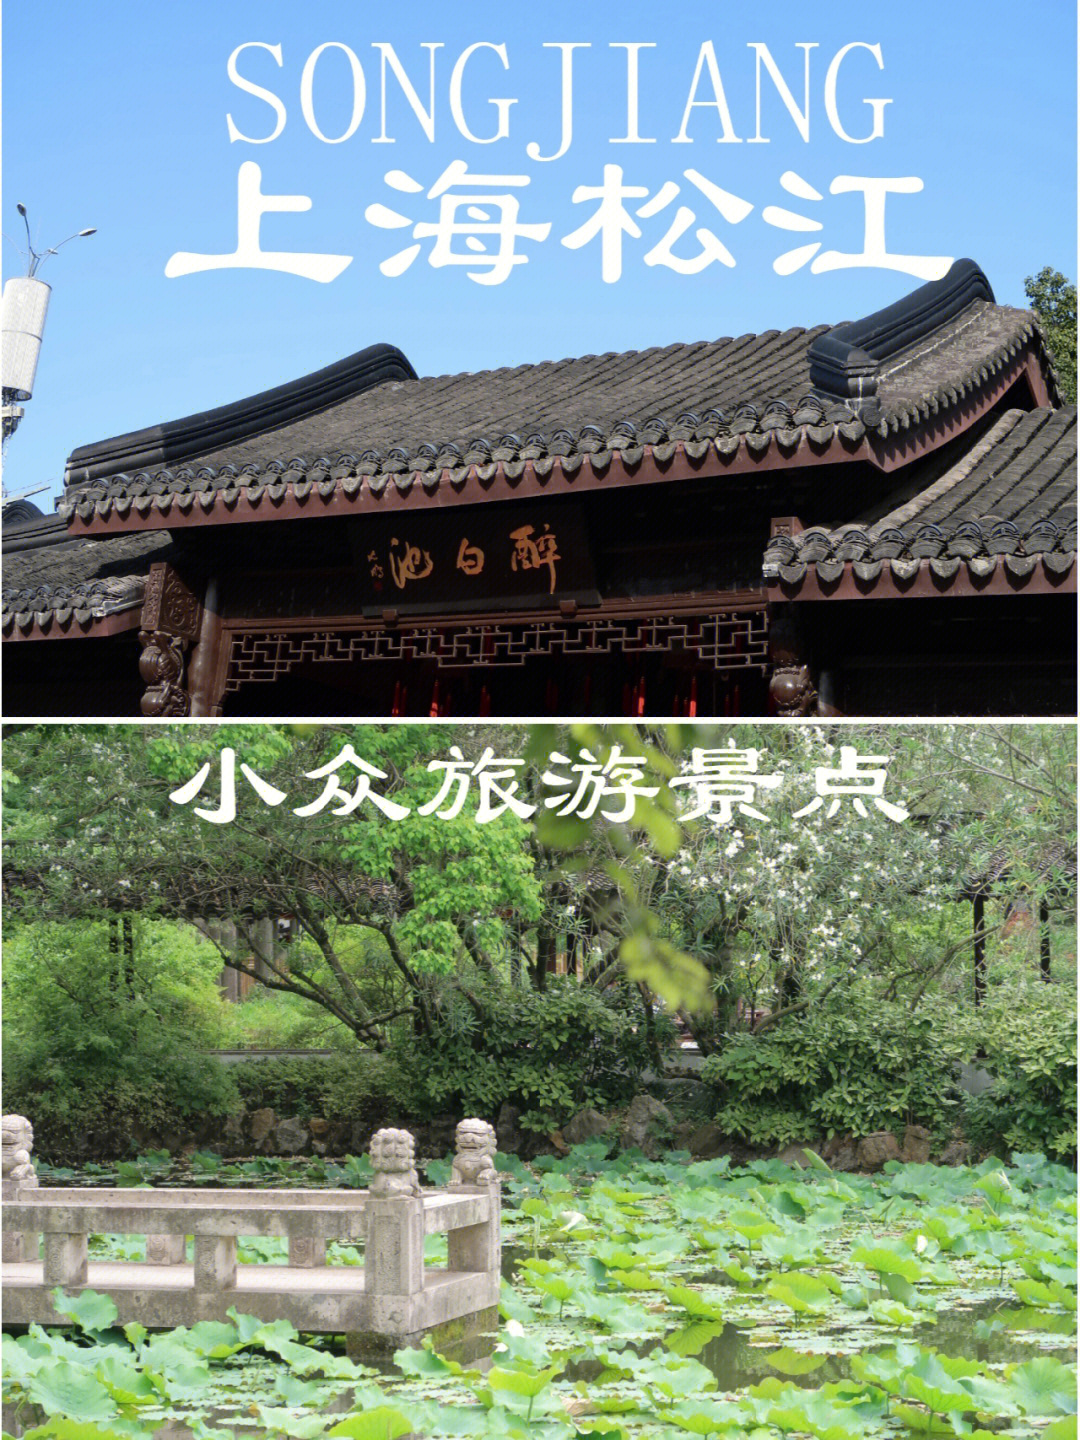 上海松江小众旅游景点醉白池公园